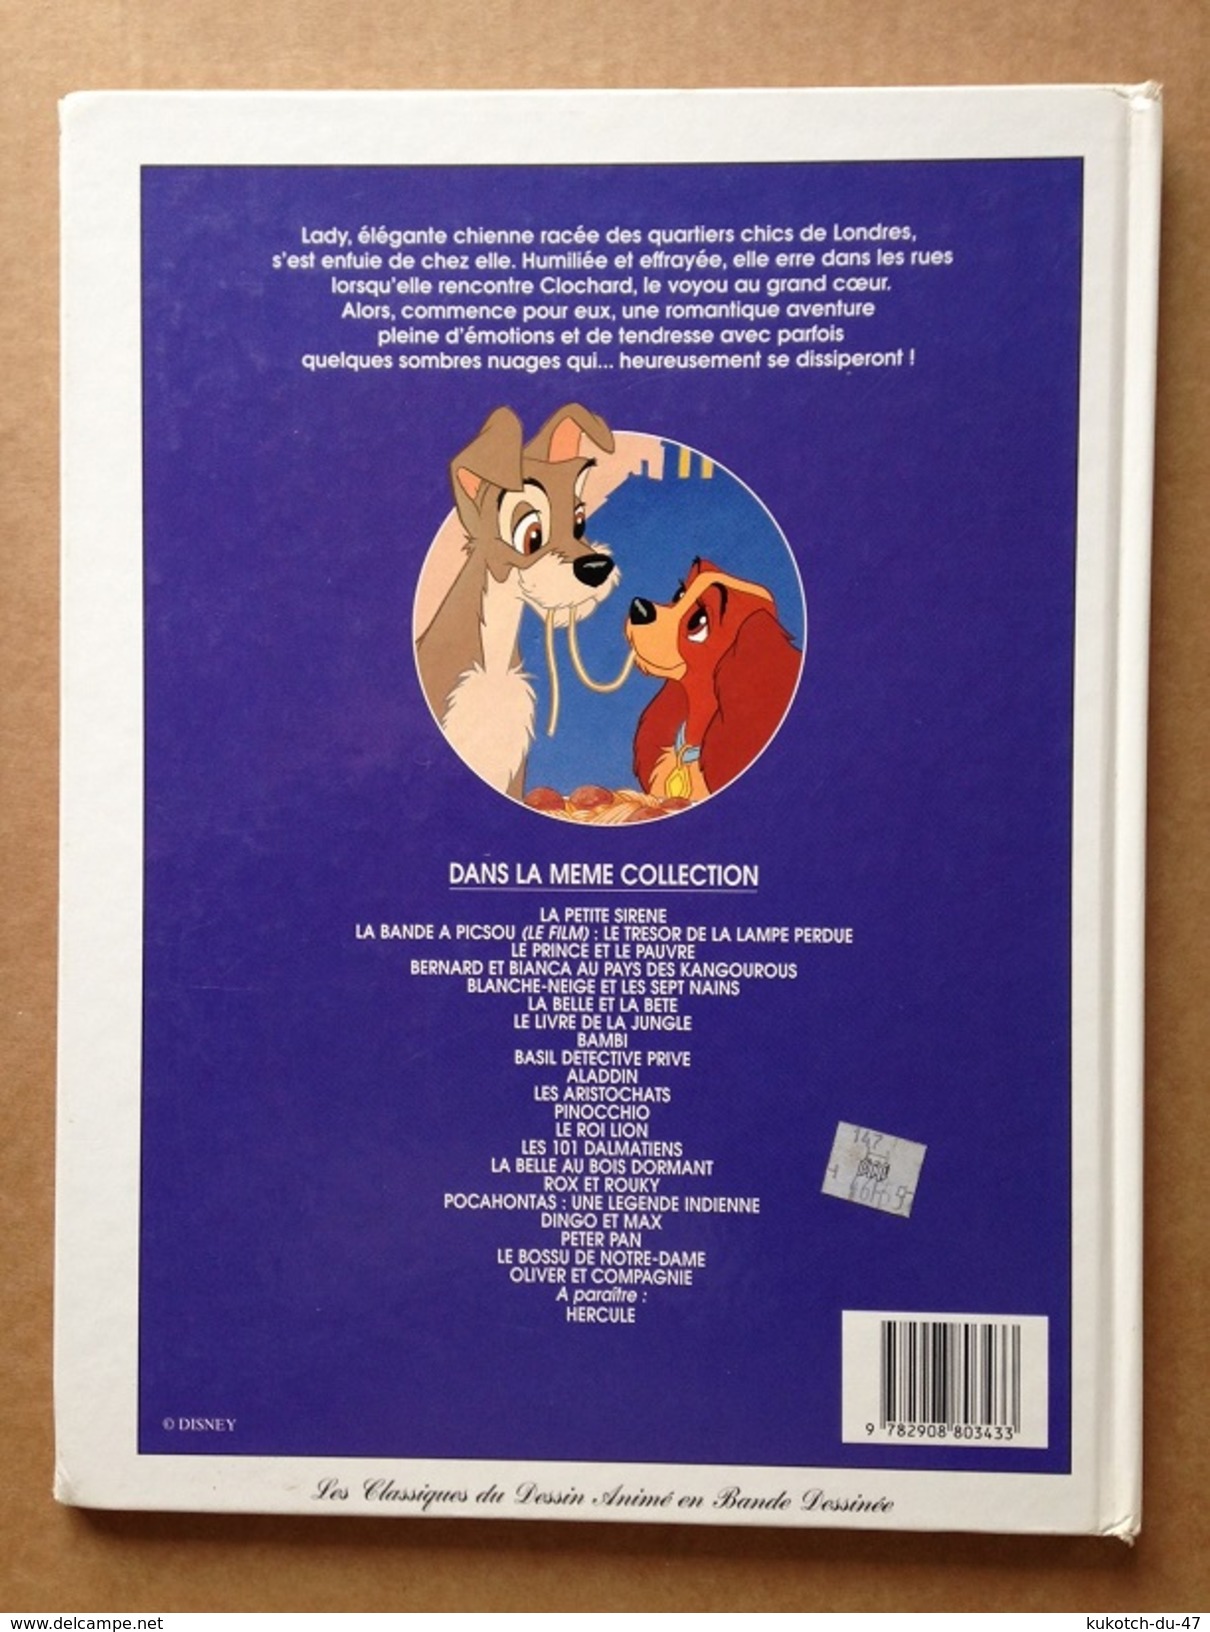 Disney - BD La belle et le Clochard (1997)